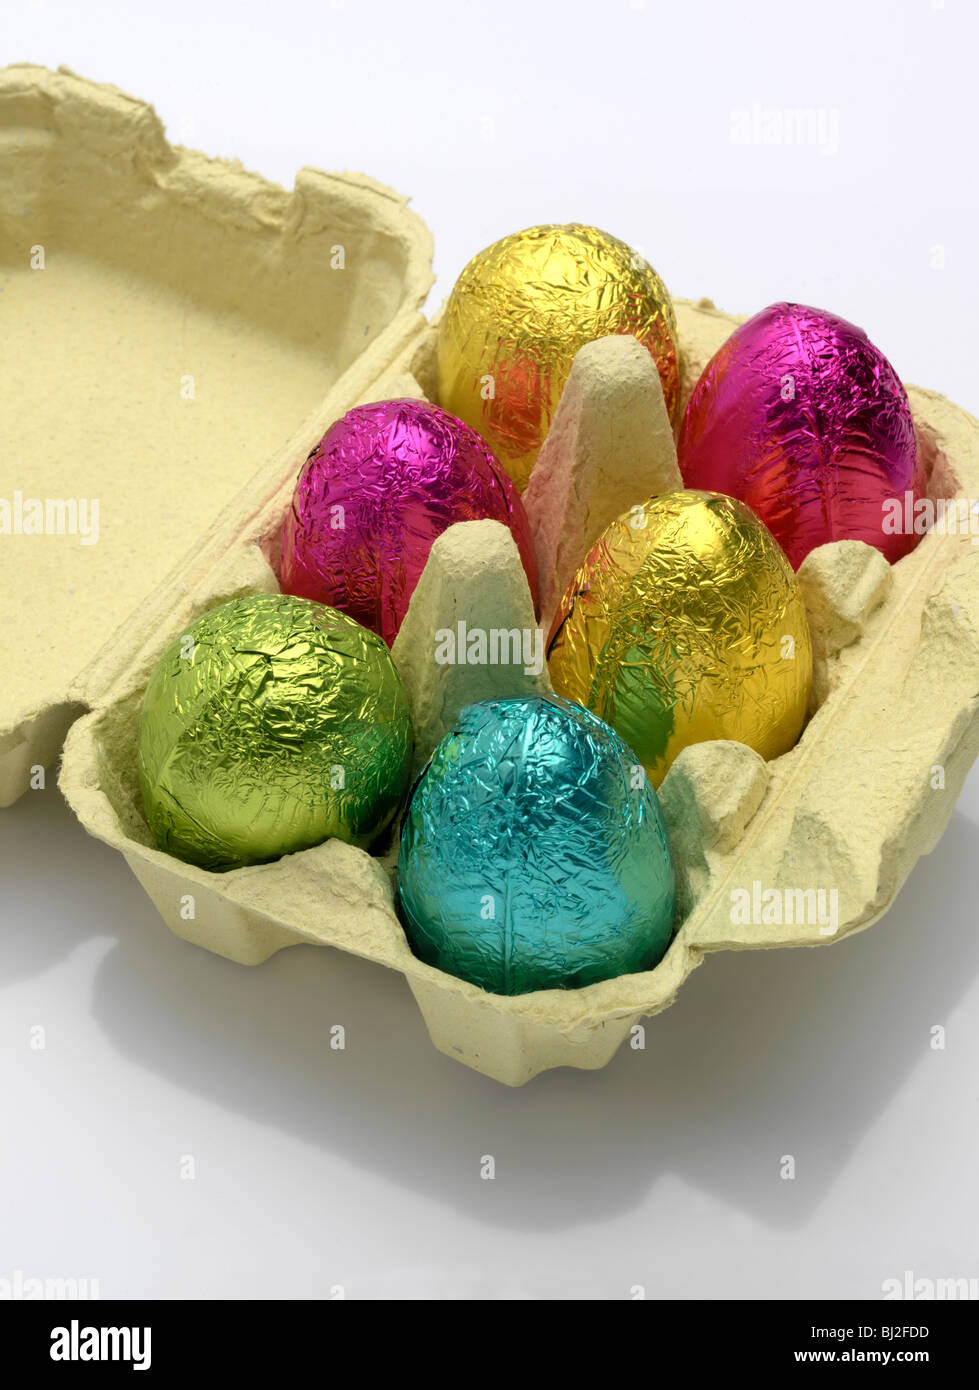 Huevos de Pascua de chocolate de colores brillantes en una caja de huevo. Foto de stock